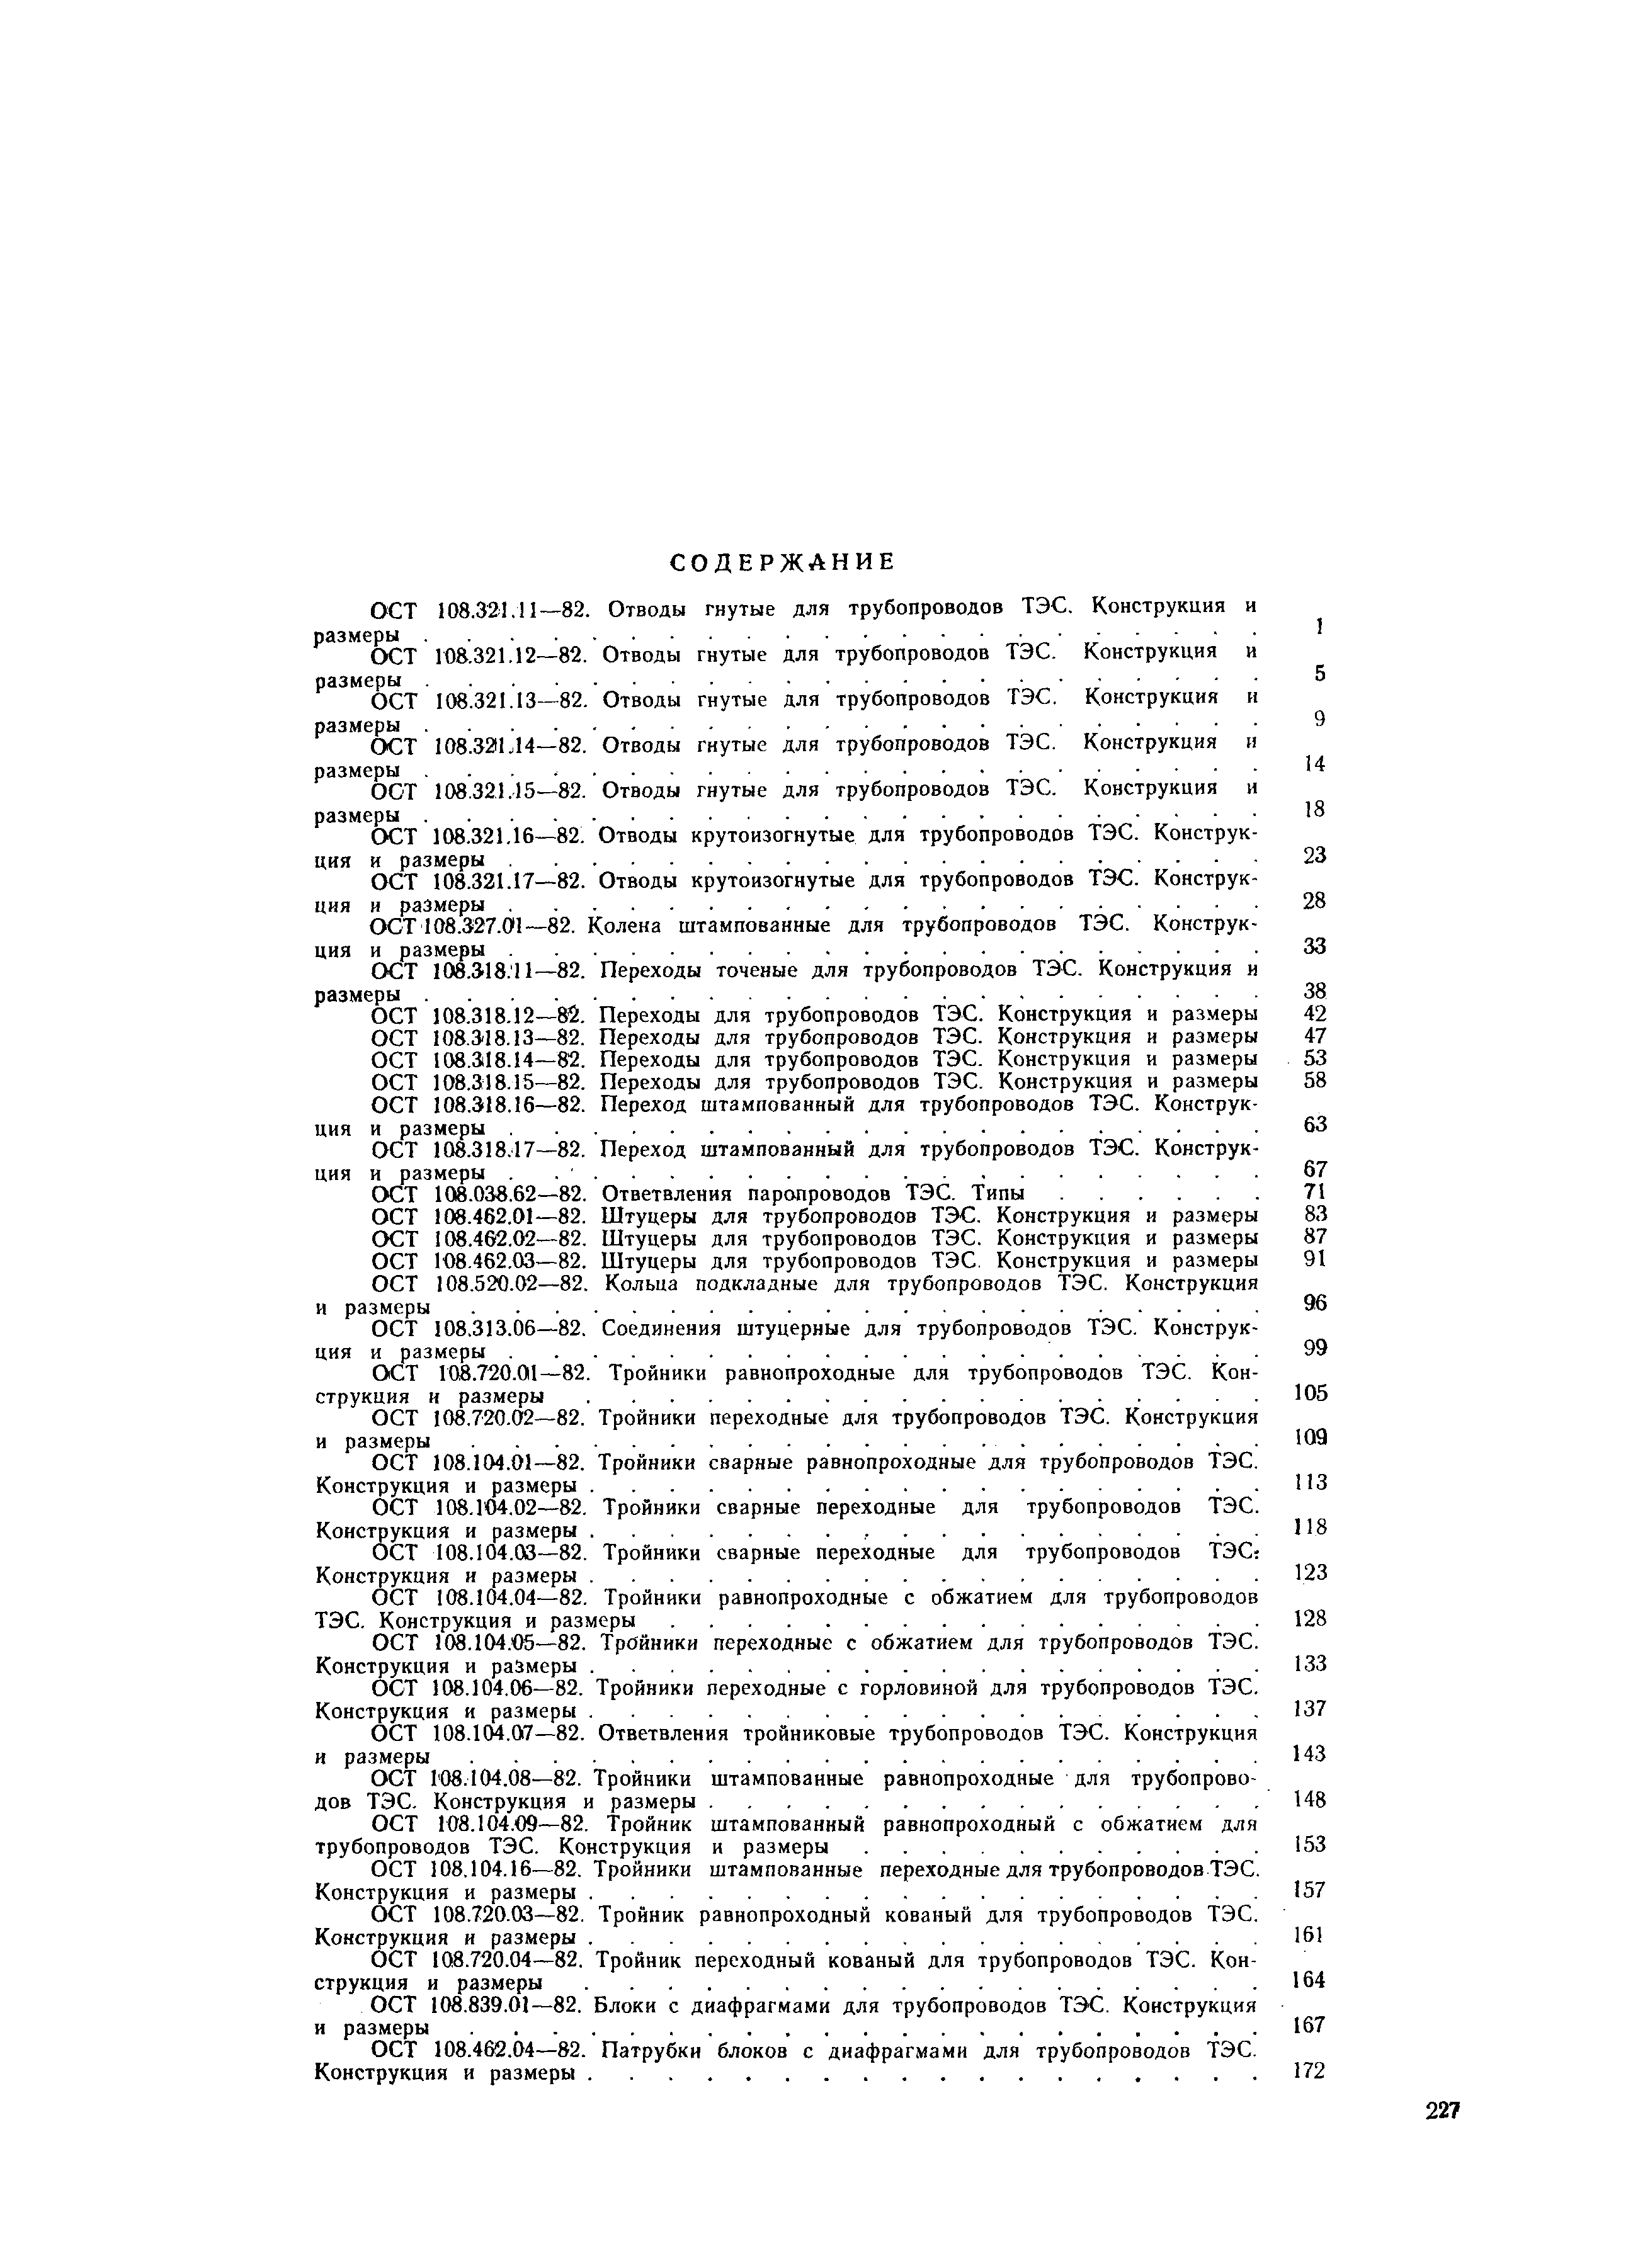 ОСТ 108.318.14-82